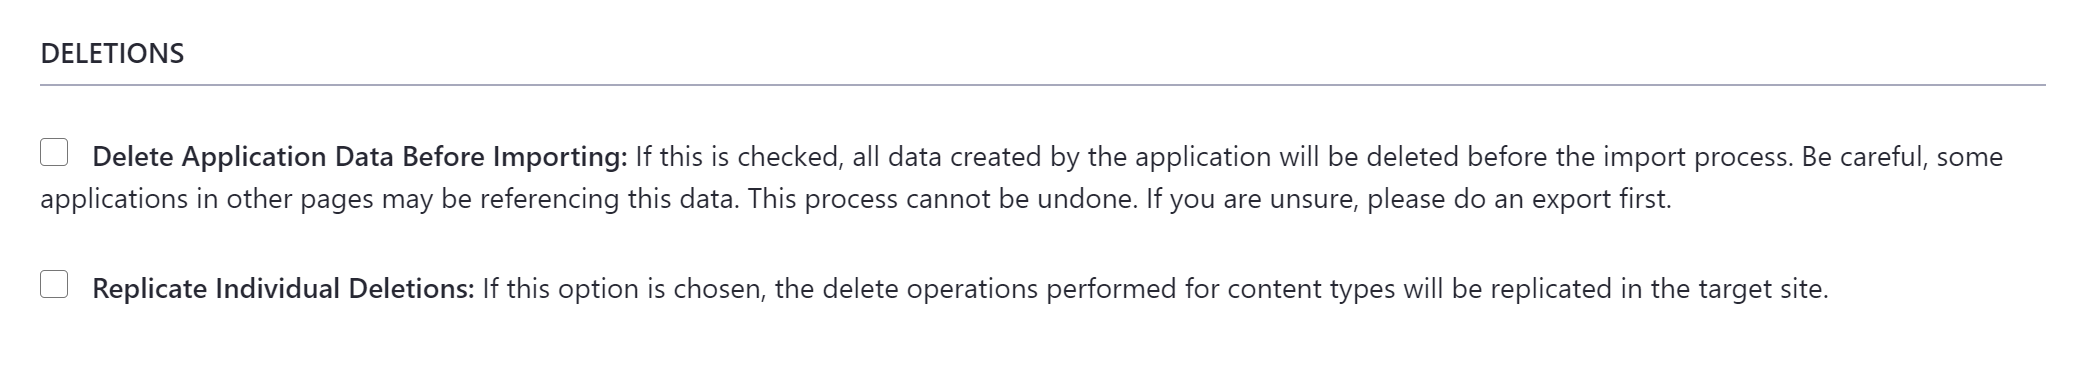 インポートする前にアプリケーションデータを削除するかどうか、および個々の削除を複製するかどうかを選択します。